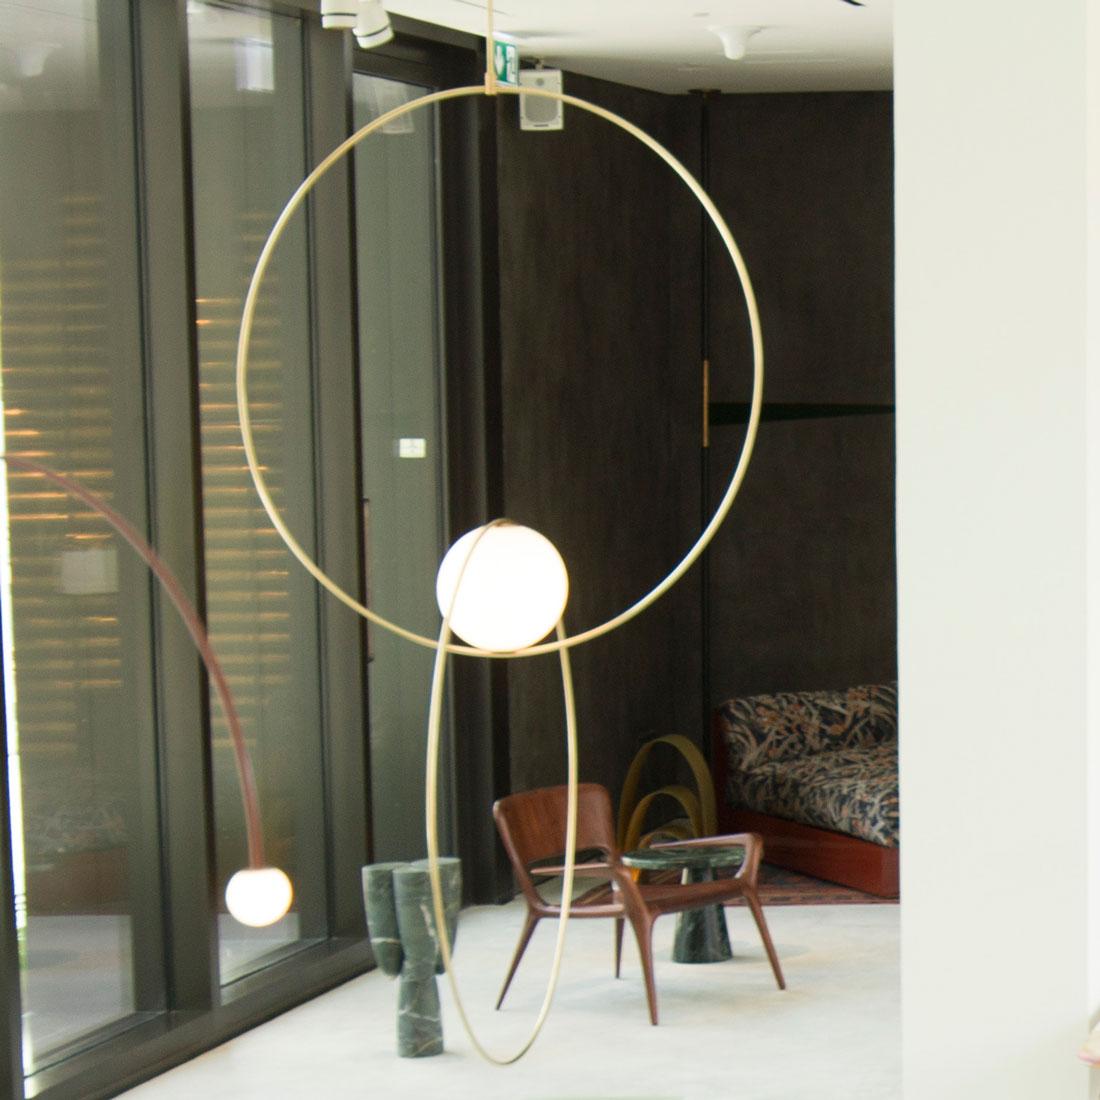 Loop-Kollektion von Michael Anastassiades Gleichgewicht, Farbe und minimale Formen. Die Double-Looping-Aufhängung verleiht jedem Raum eine elementare Schlichtheit, perfekt in ihrer architektonischen Symmetrie